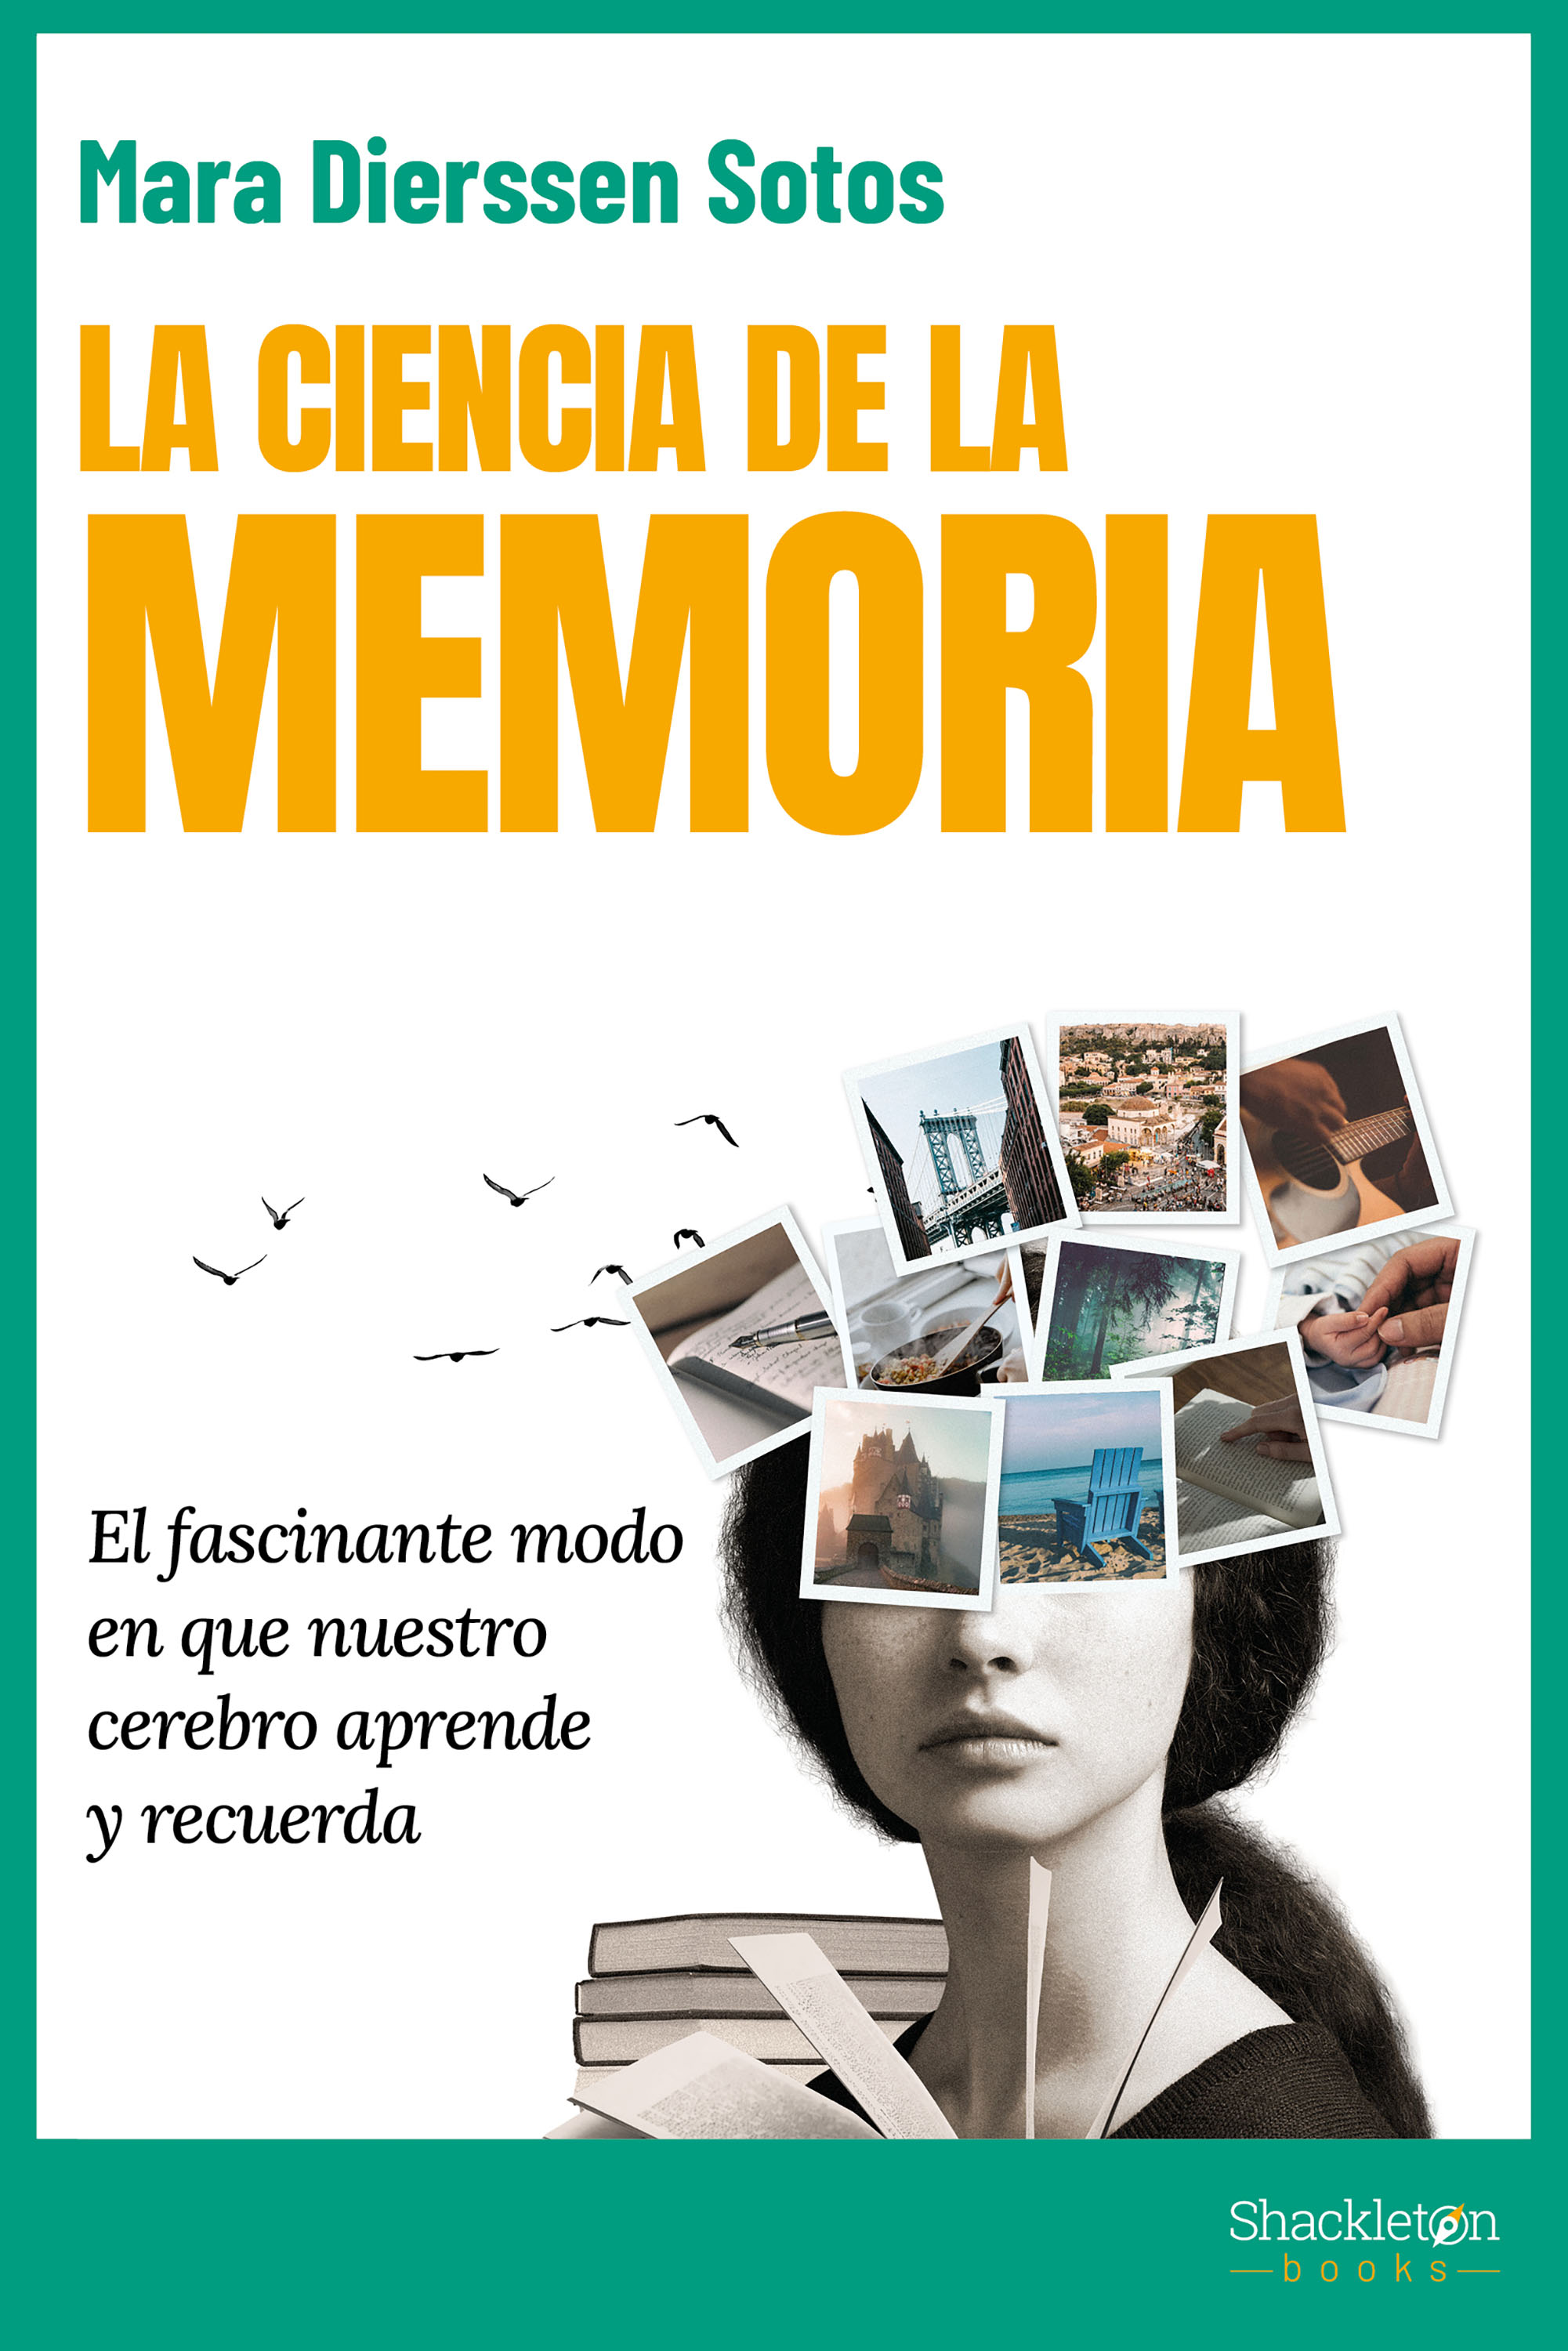 La Ciencia de la memoria : el fascinante modo en que nuestro cerebro aprende y recuerda / Mara Dierssen Sotos